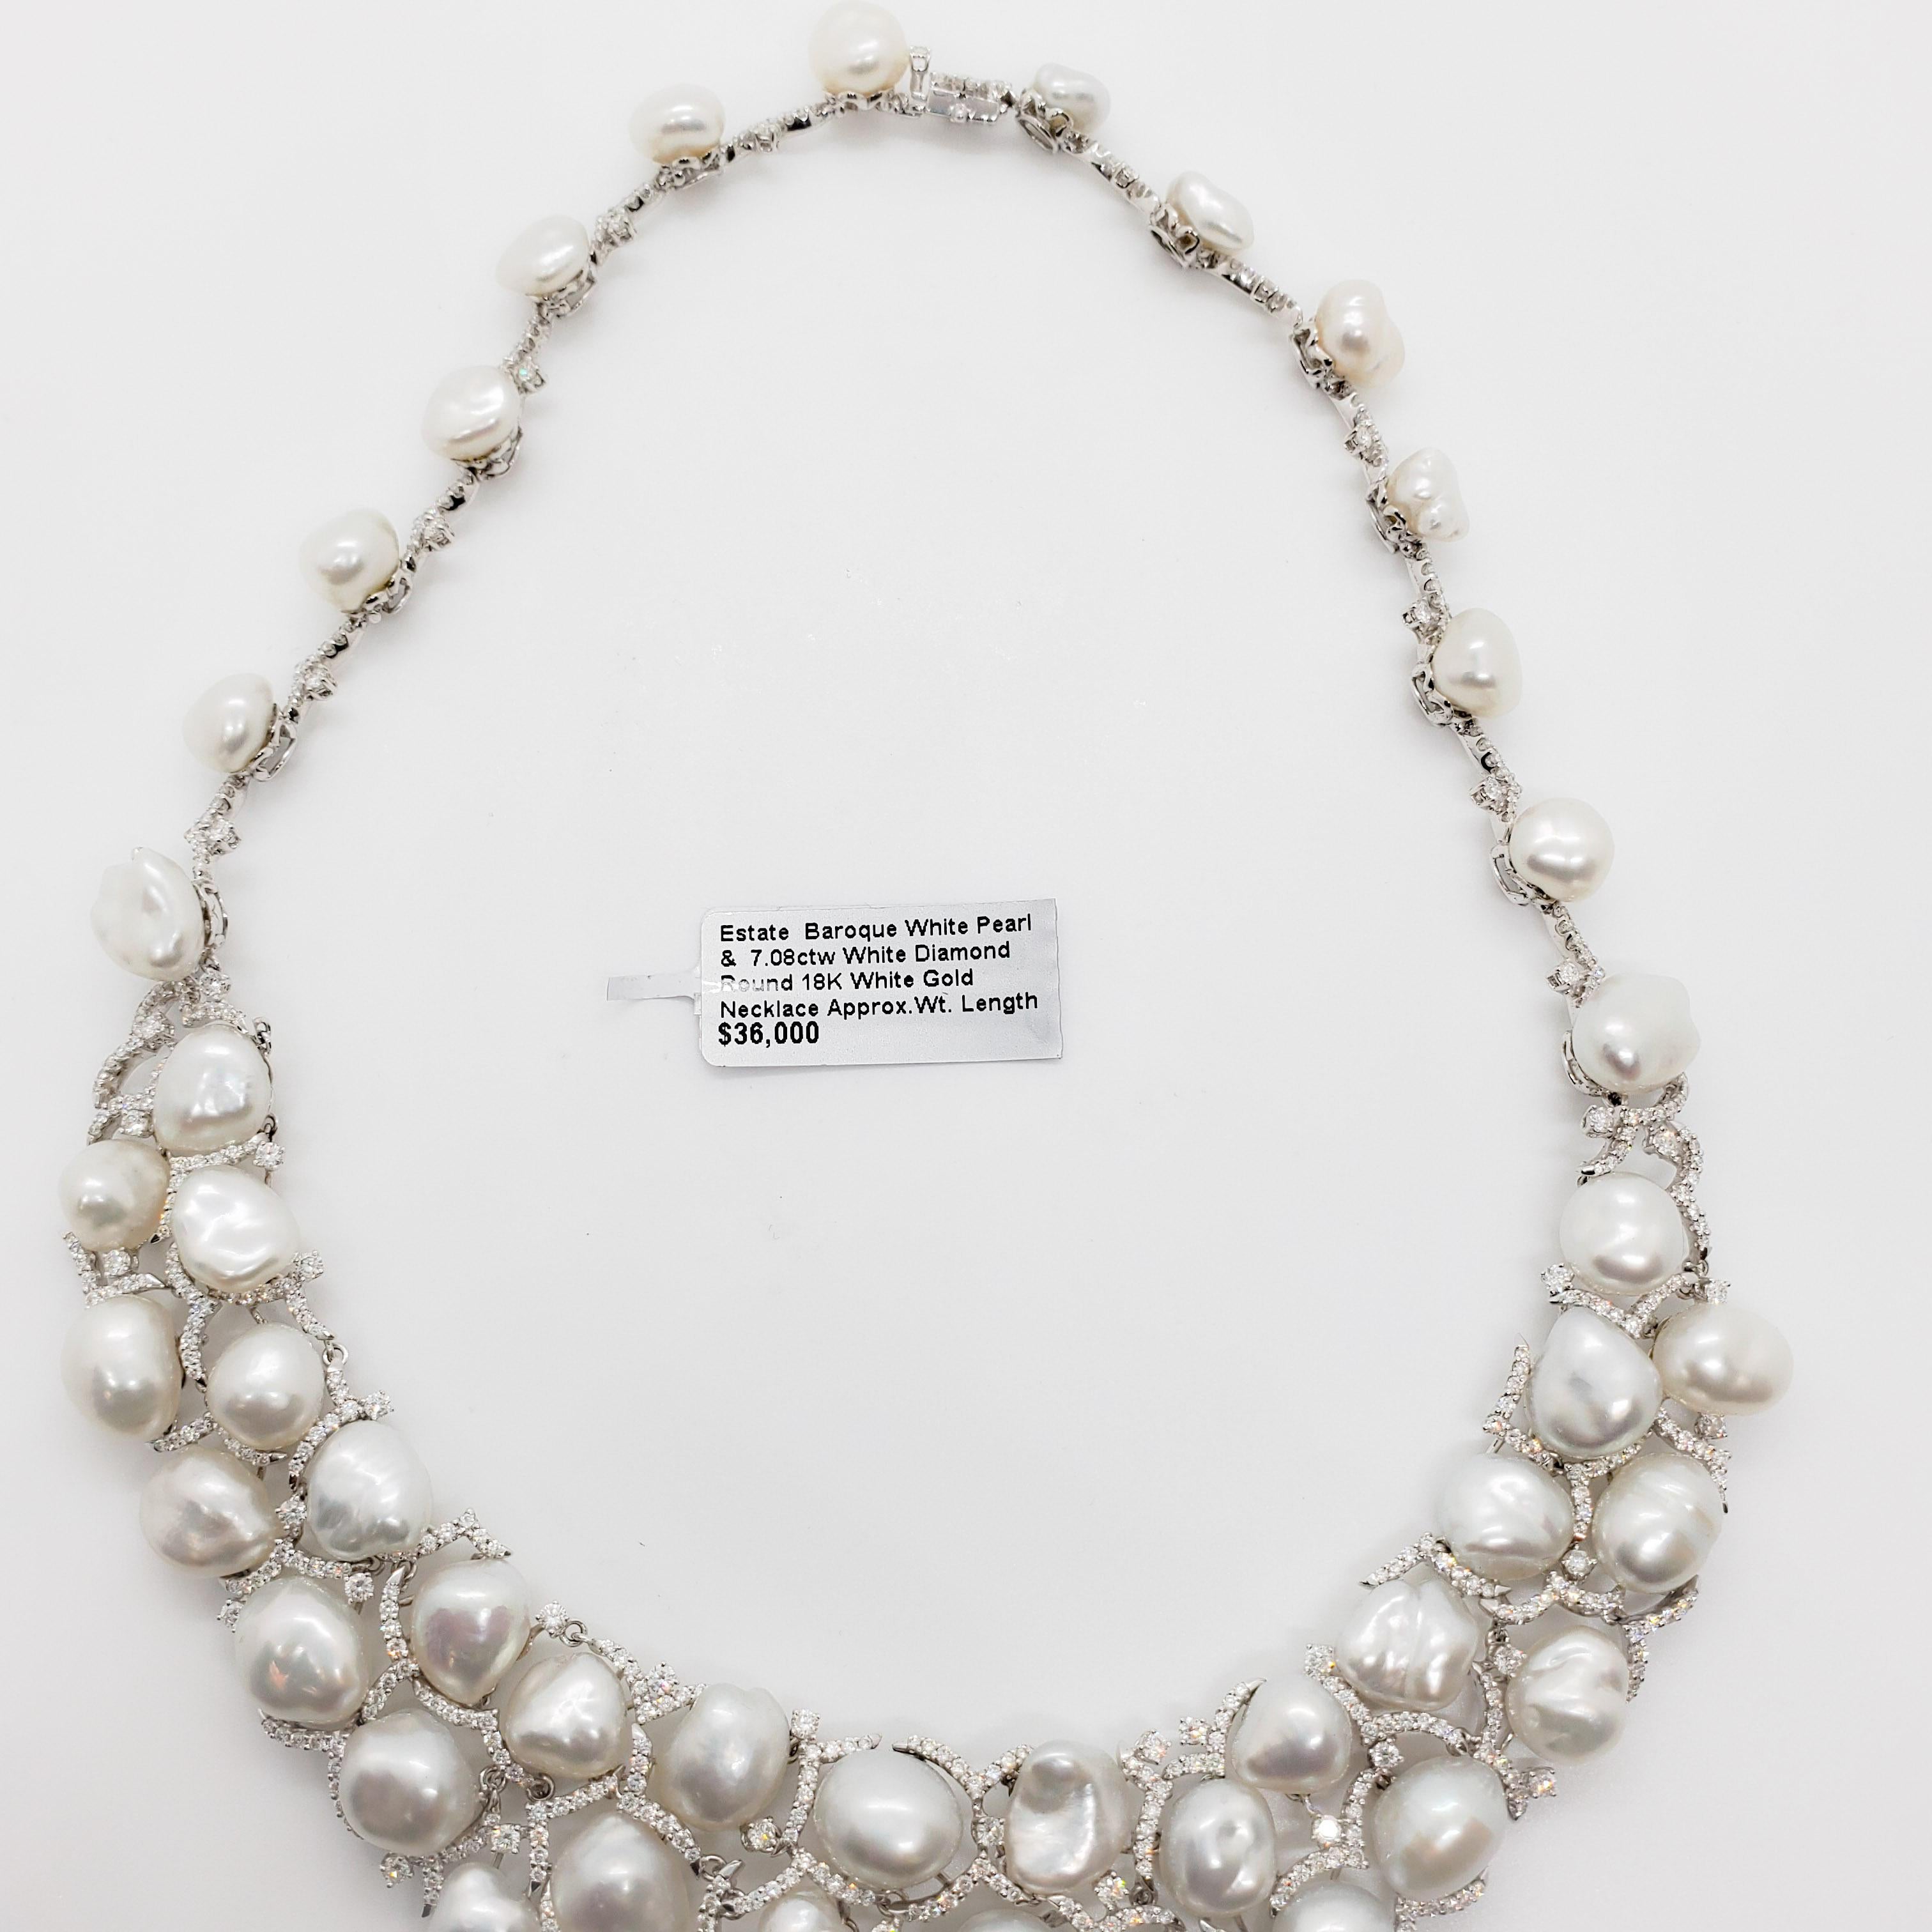 Round Cut Estate Baroque White Pearl and White Diamond Necklace